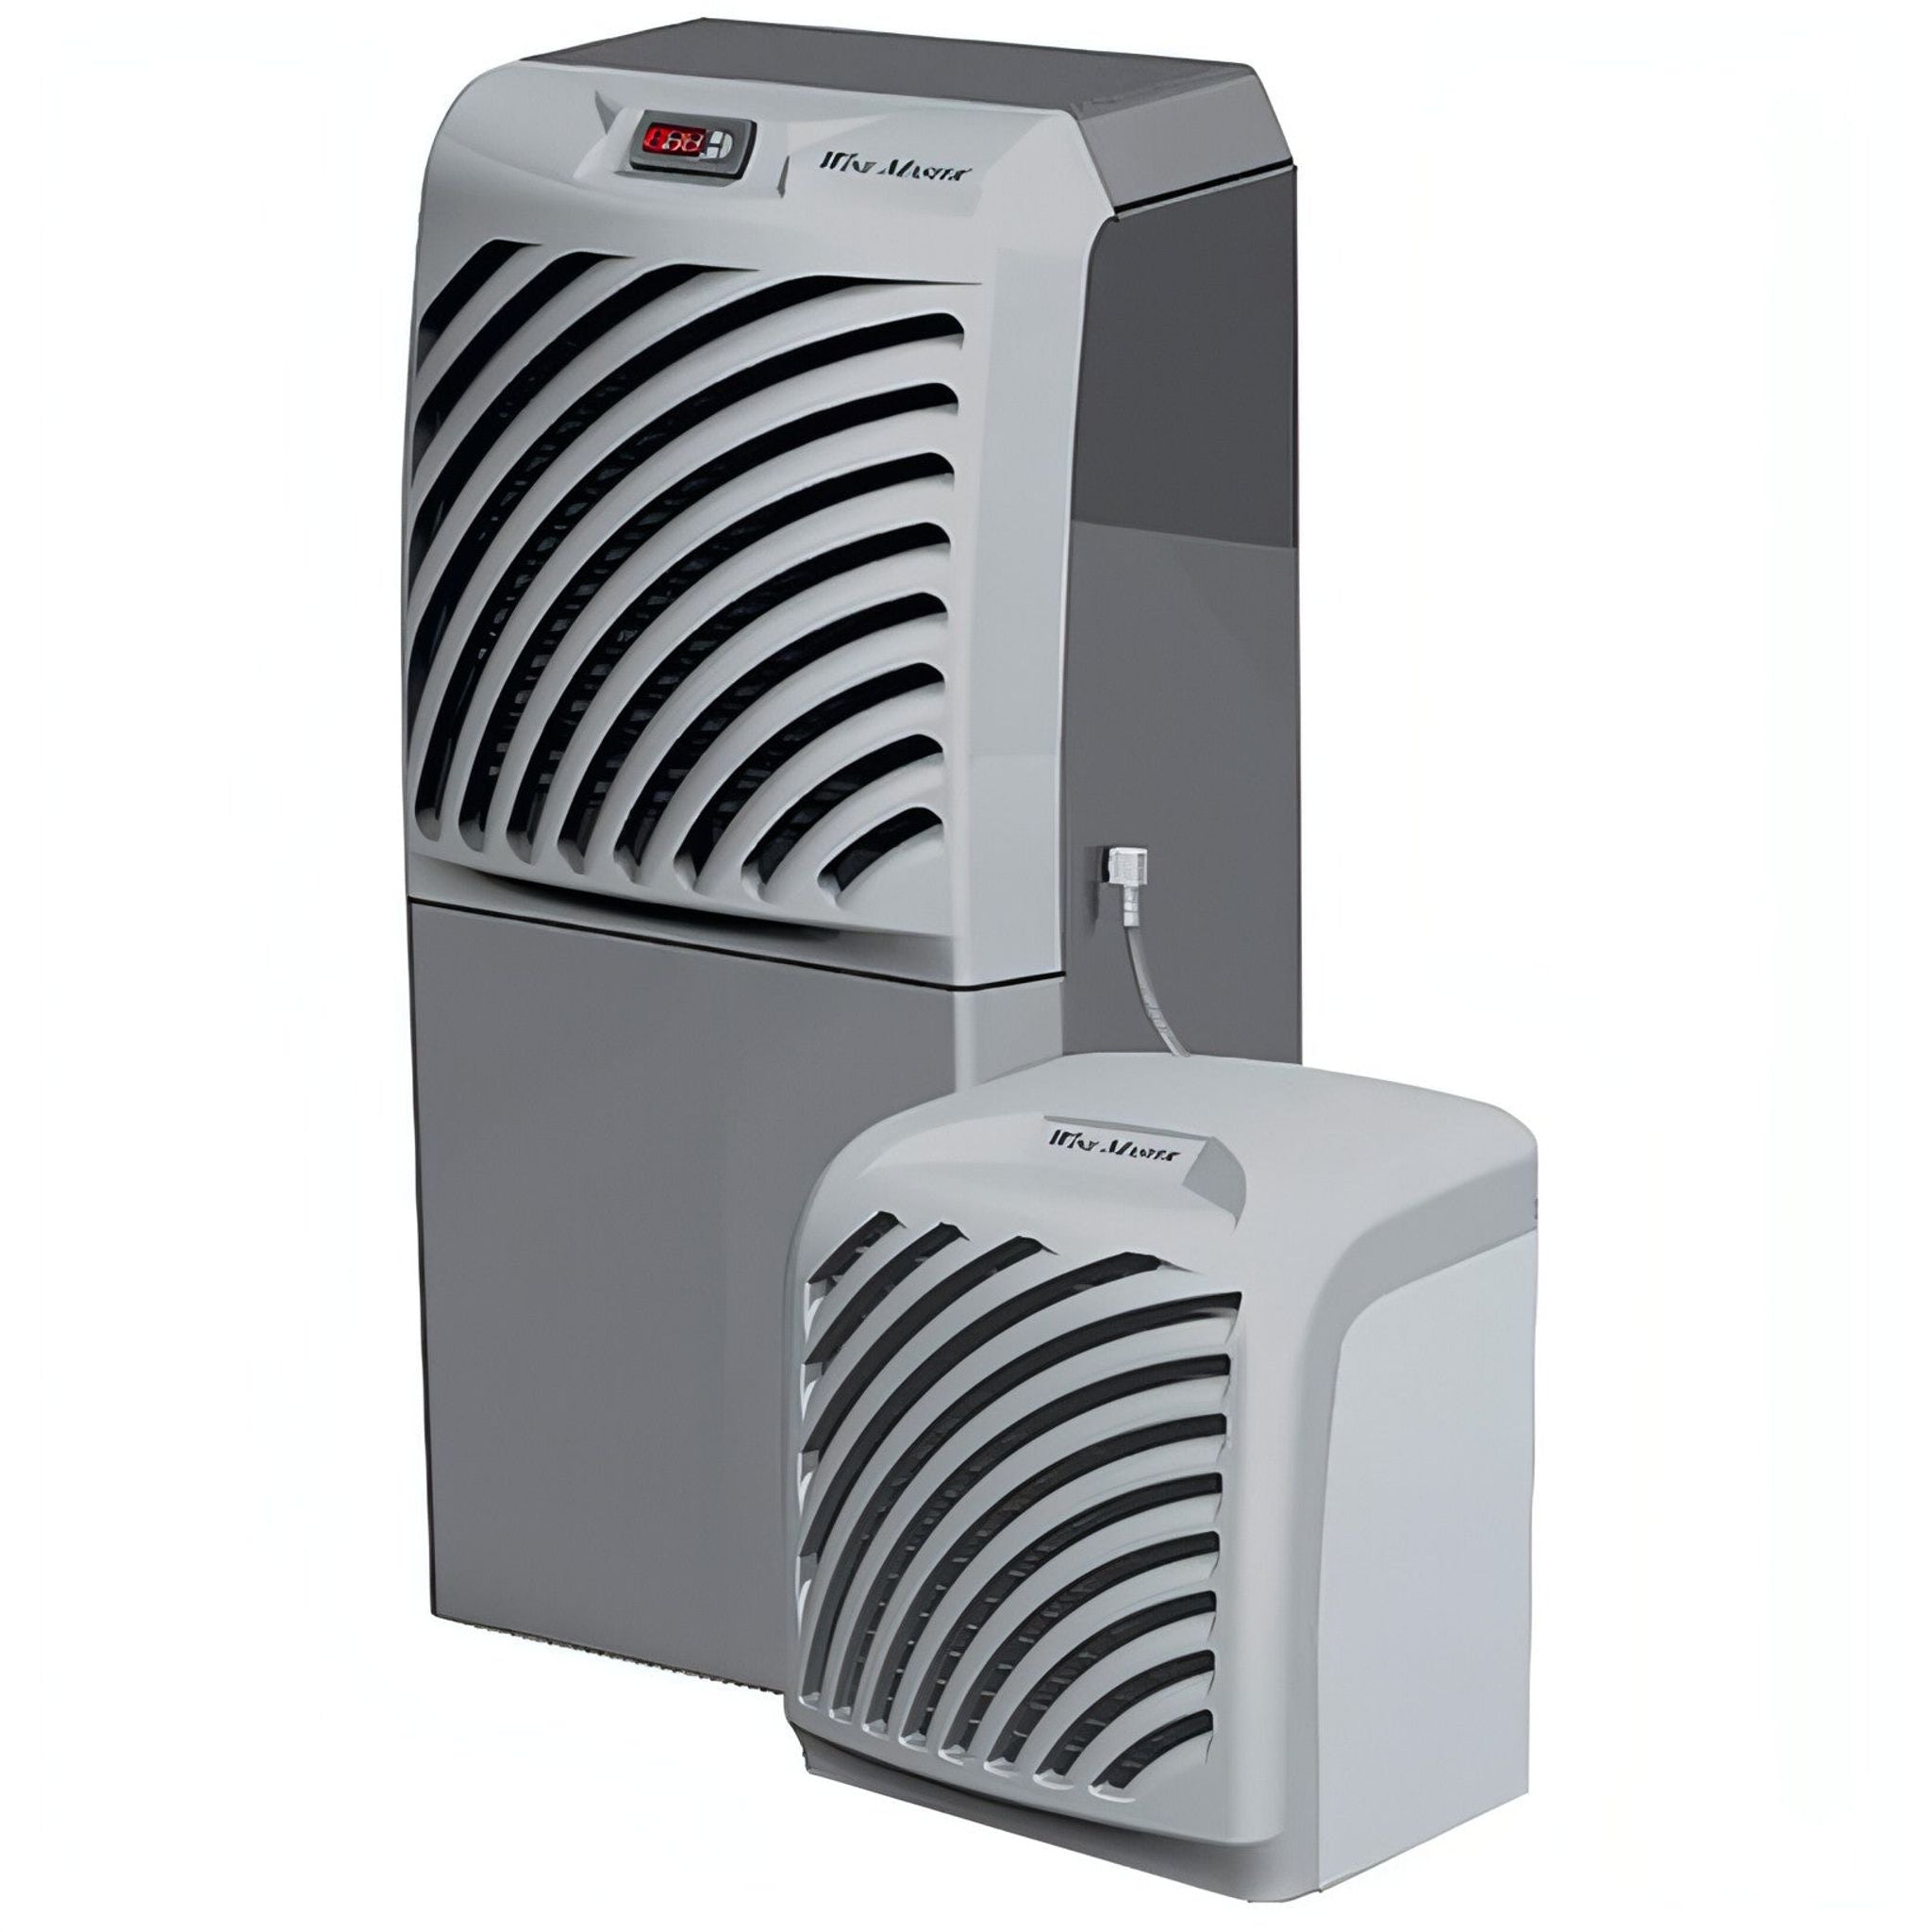 Fondis Winemaster Filtre à poussière pour climatiseurs SP100 W4007.2